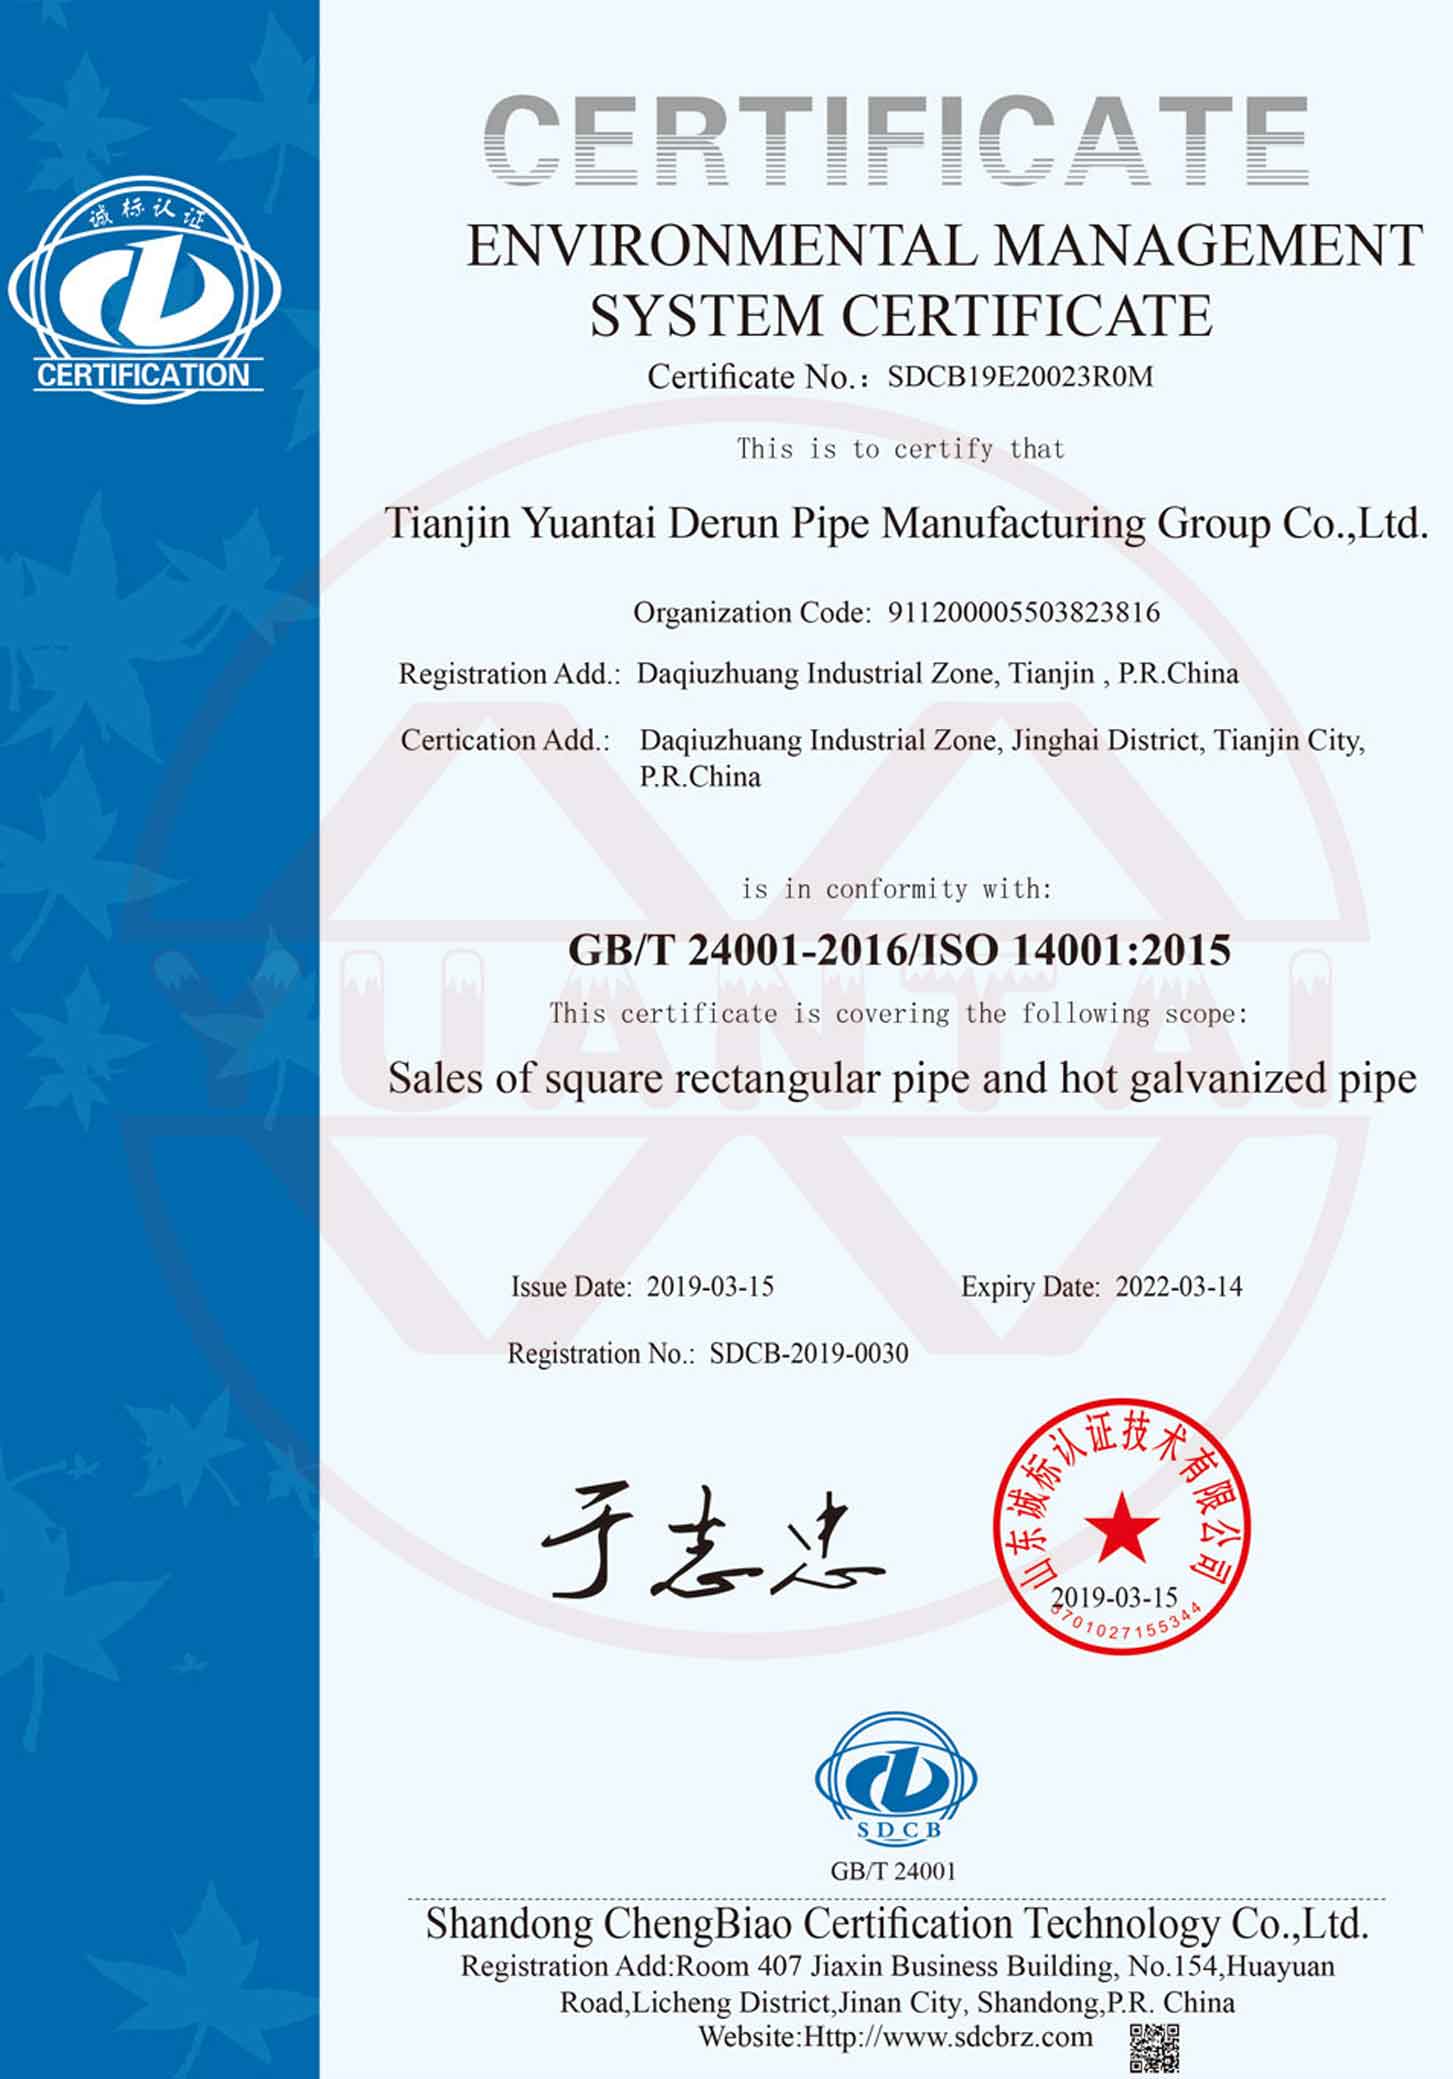 GB-T-140001 sertifisering